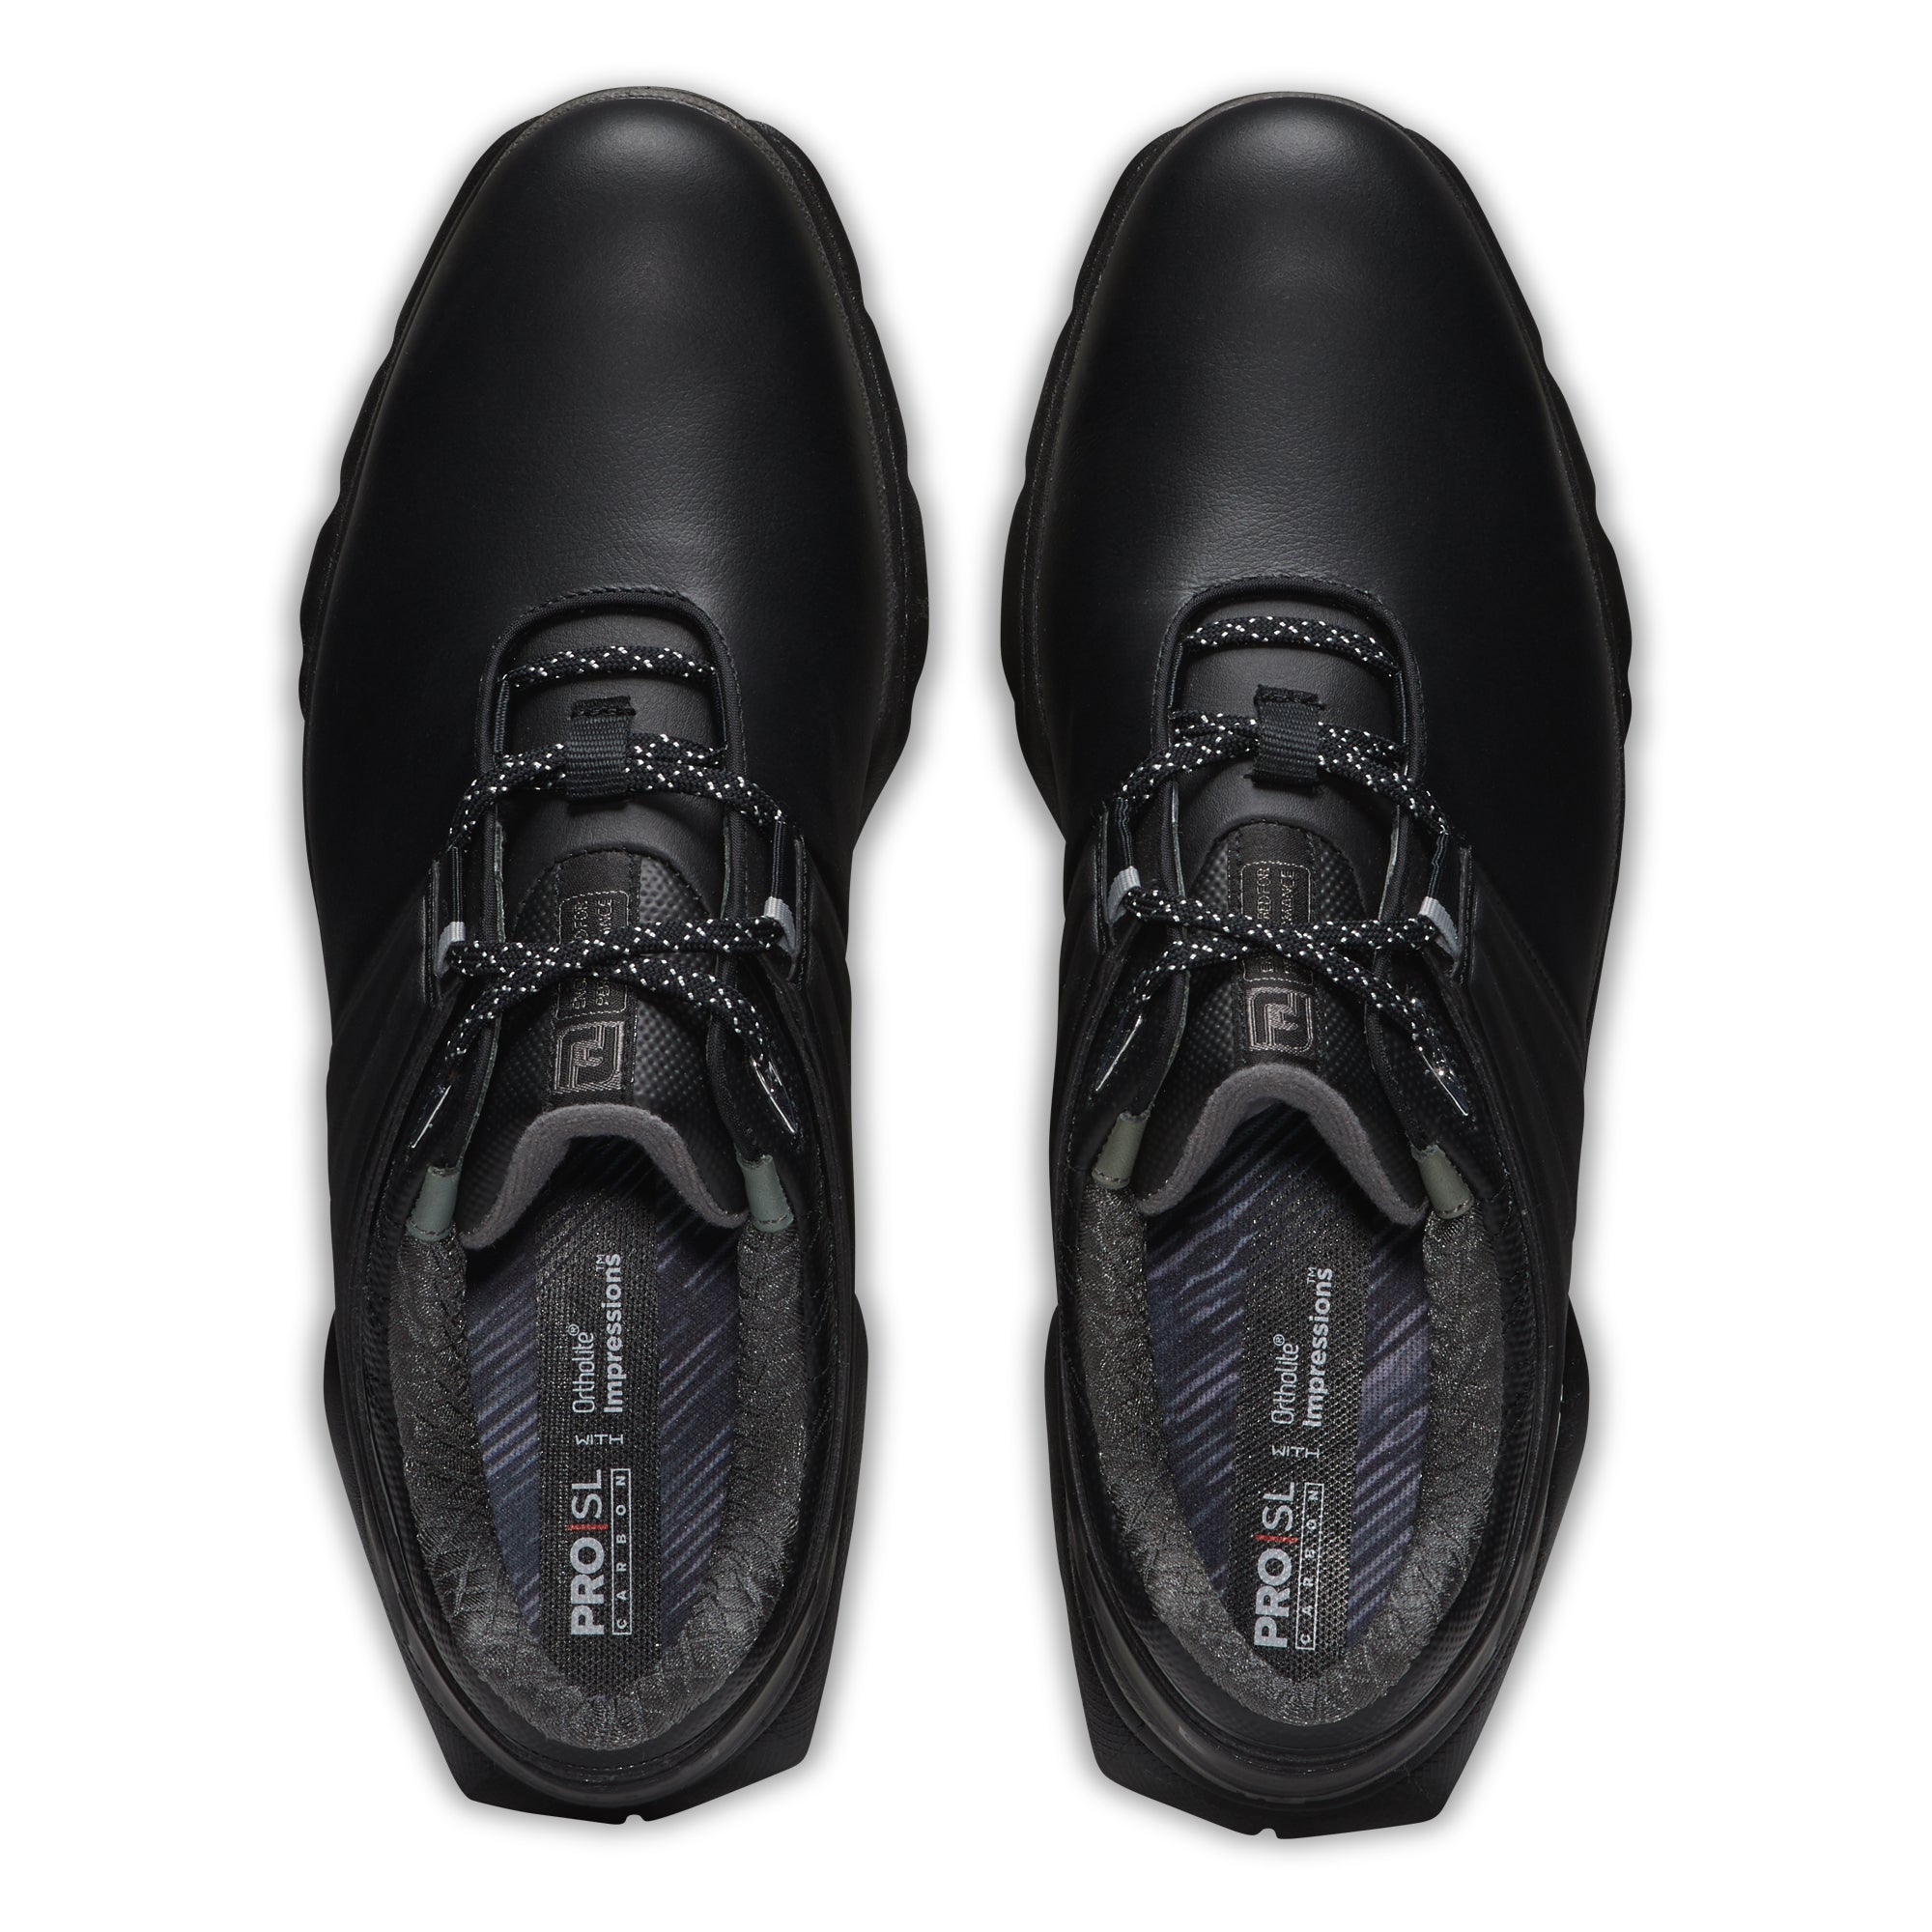 FootJoy Pro SL Carbon Golf Shoes